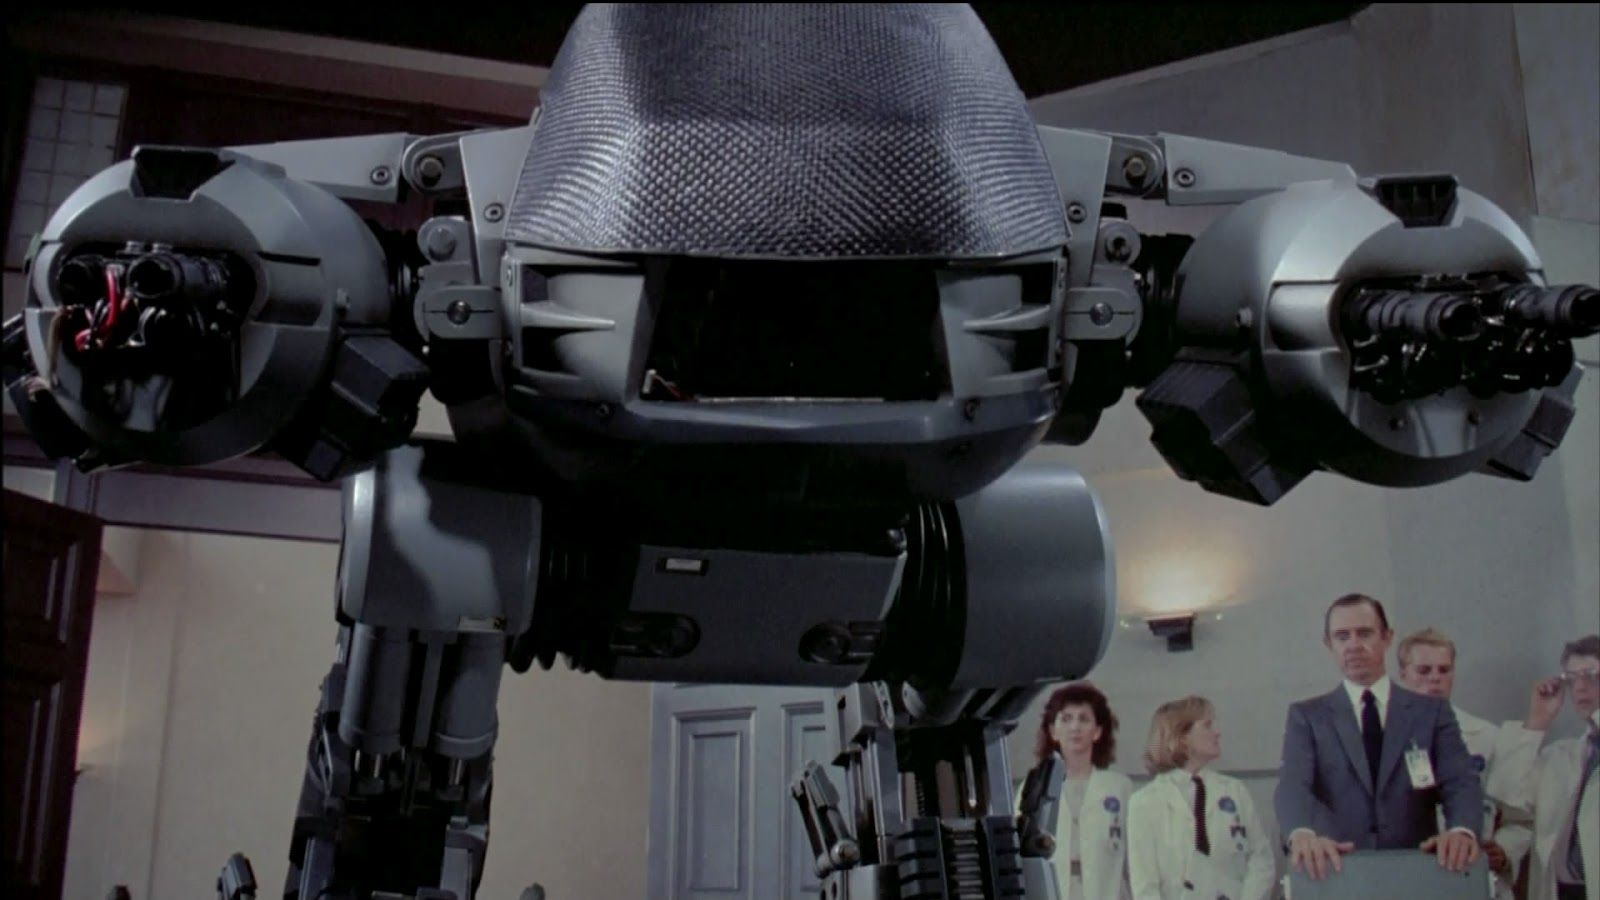 DIY Geniuses Build A 7 Foot Tall Robocop Villain. It's Your Move